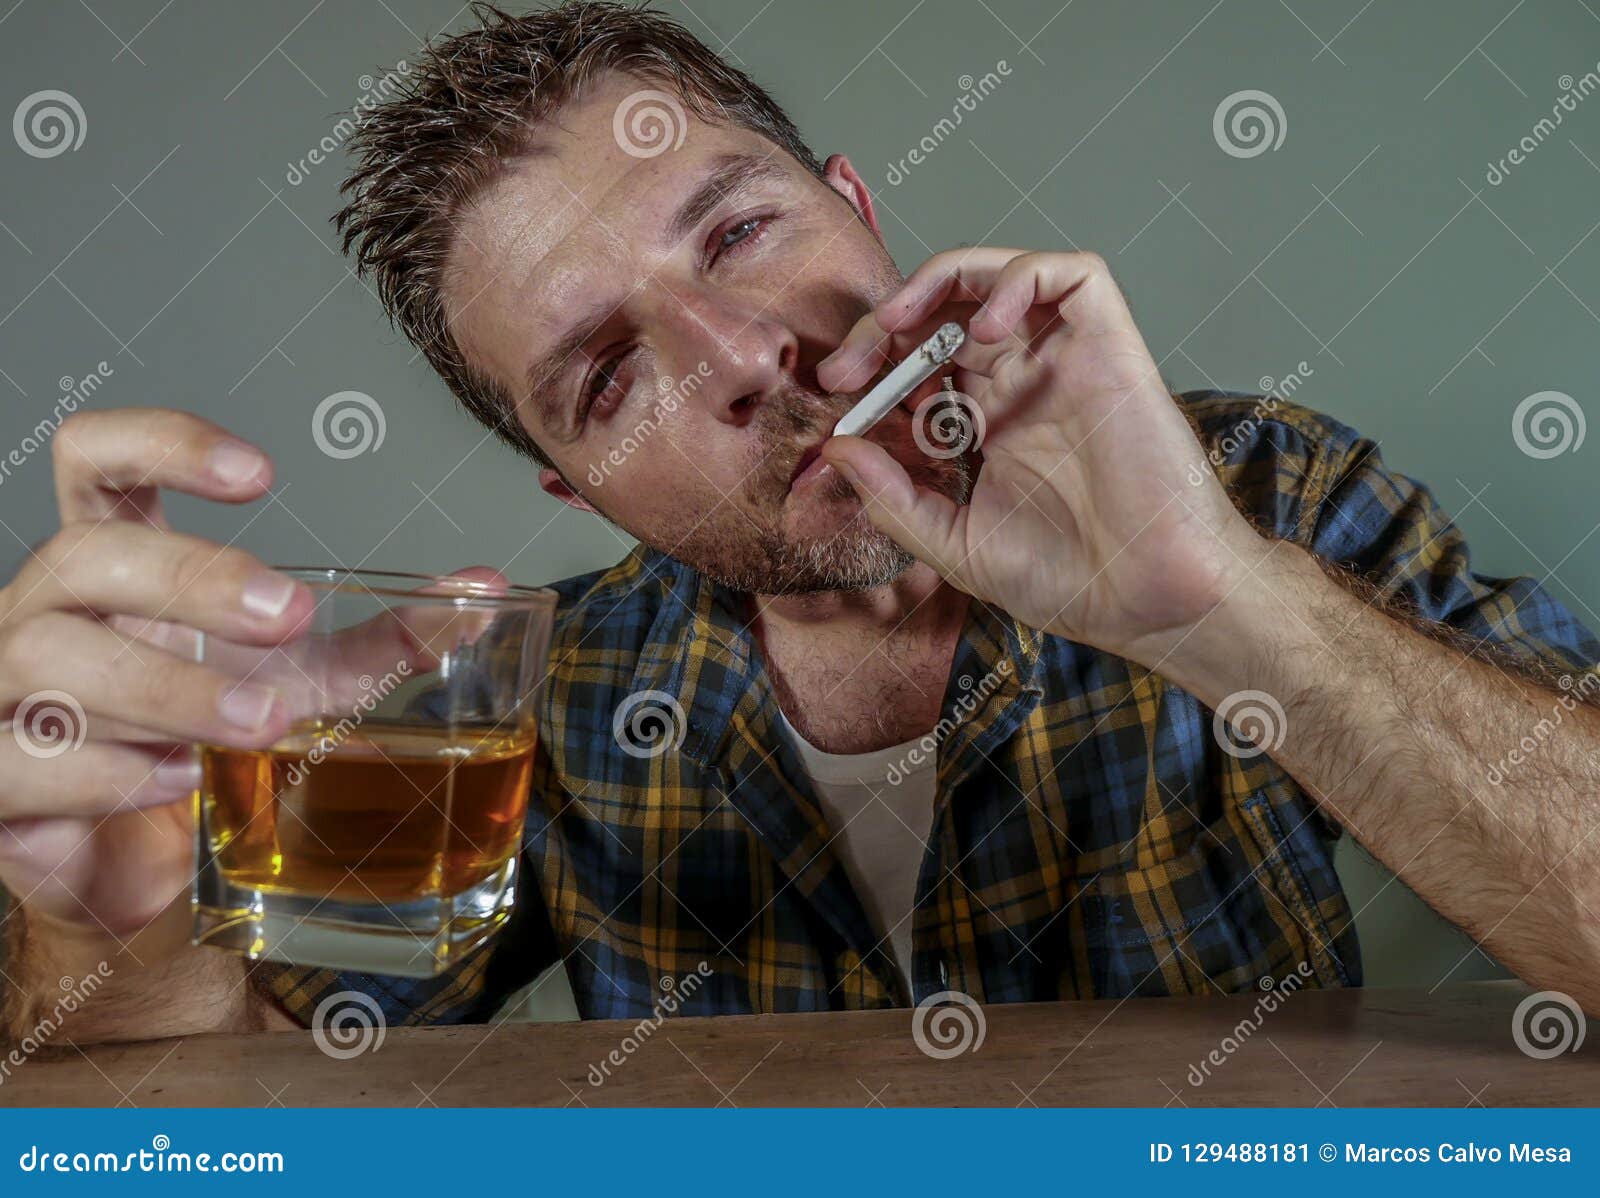 Пьет поет курит. Пить и курить. Мужик пьет и курит.